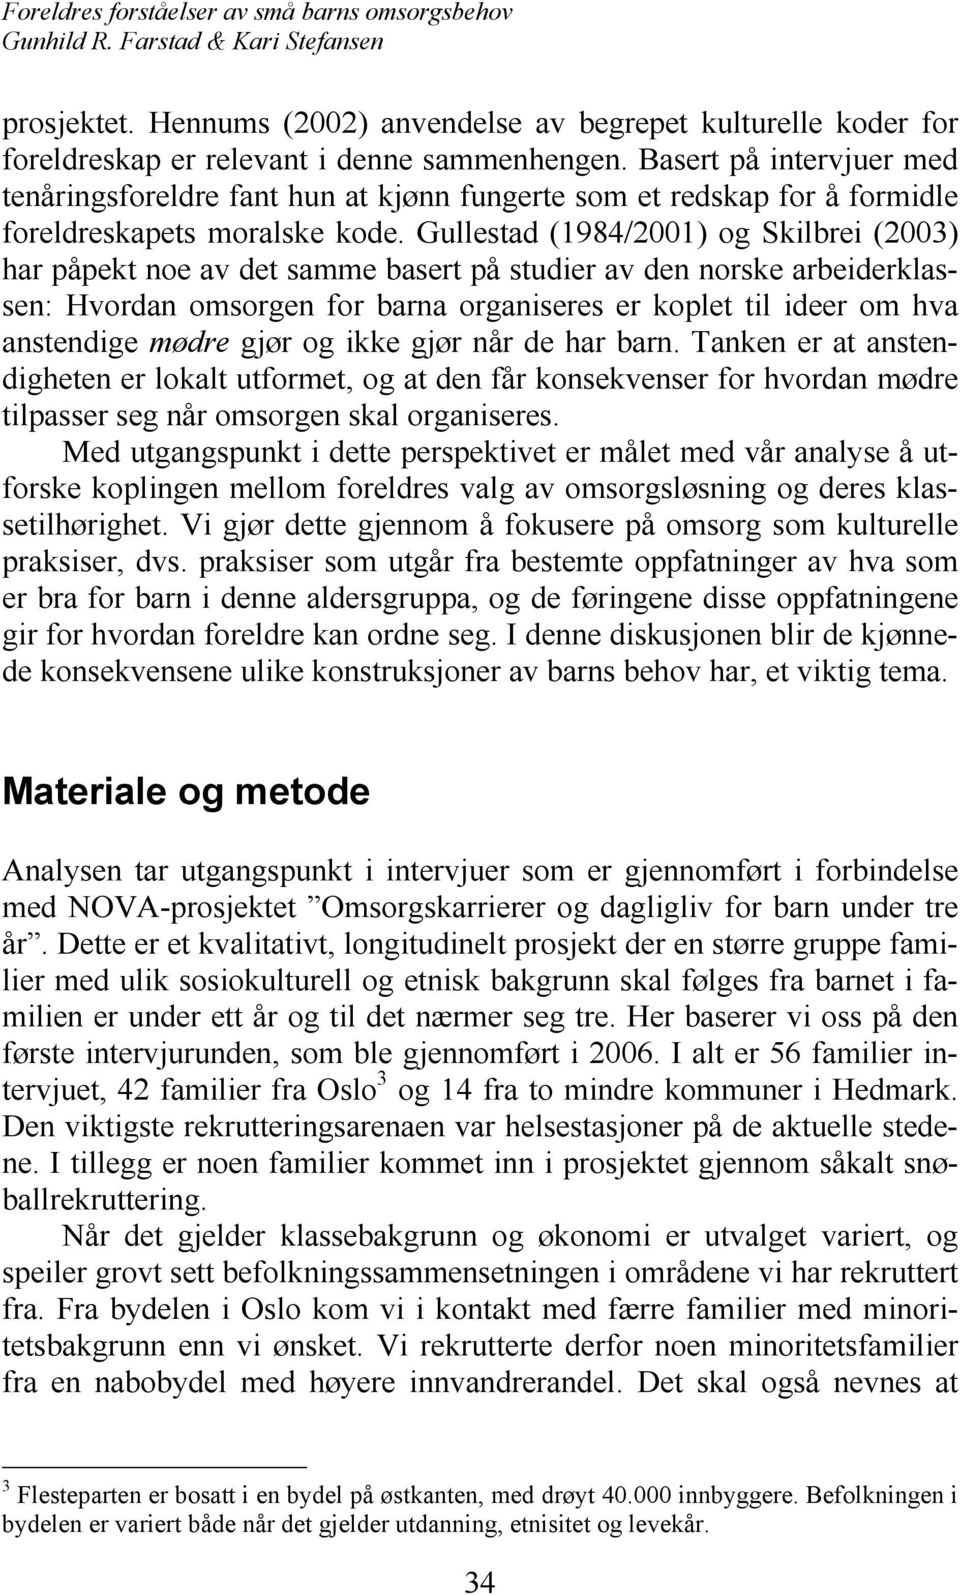 Gullestad (1984/2001) og Skilbrei (2003) har påpekt noe av det samme basert på studier av den norske arbeiderklassen: Hvordan omsorgen for barna organiseres er koplet til ideer om hva anstendige